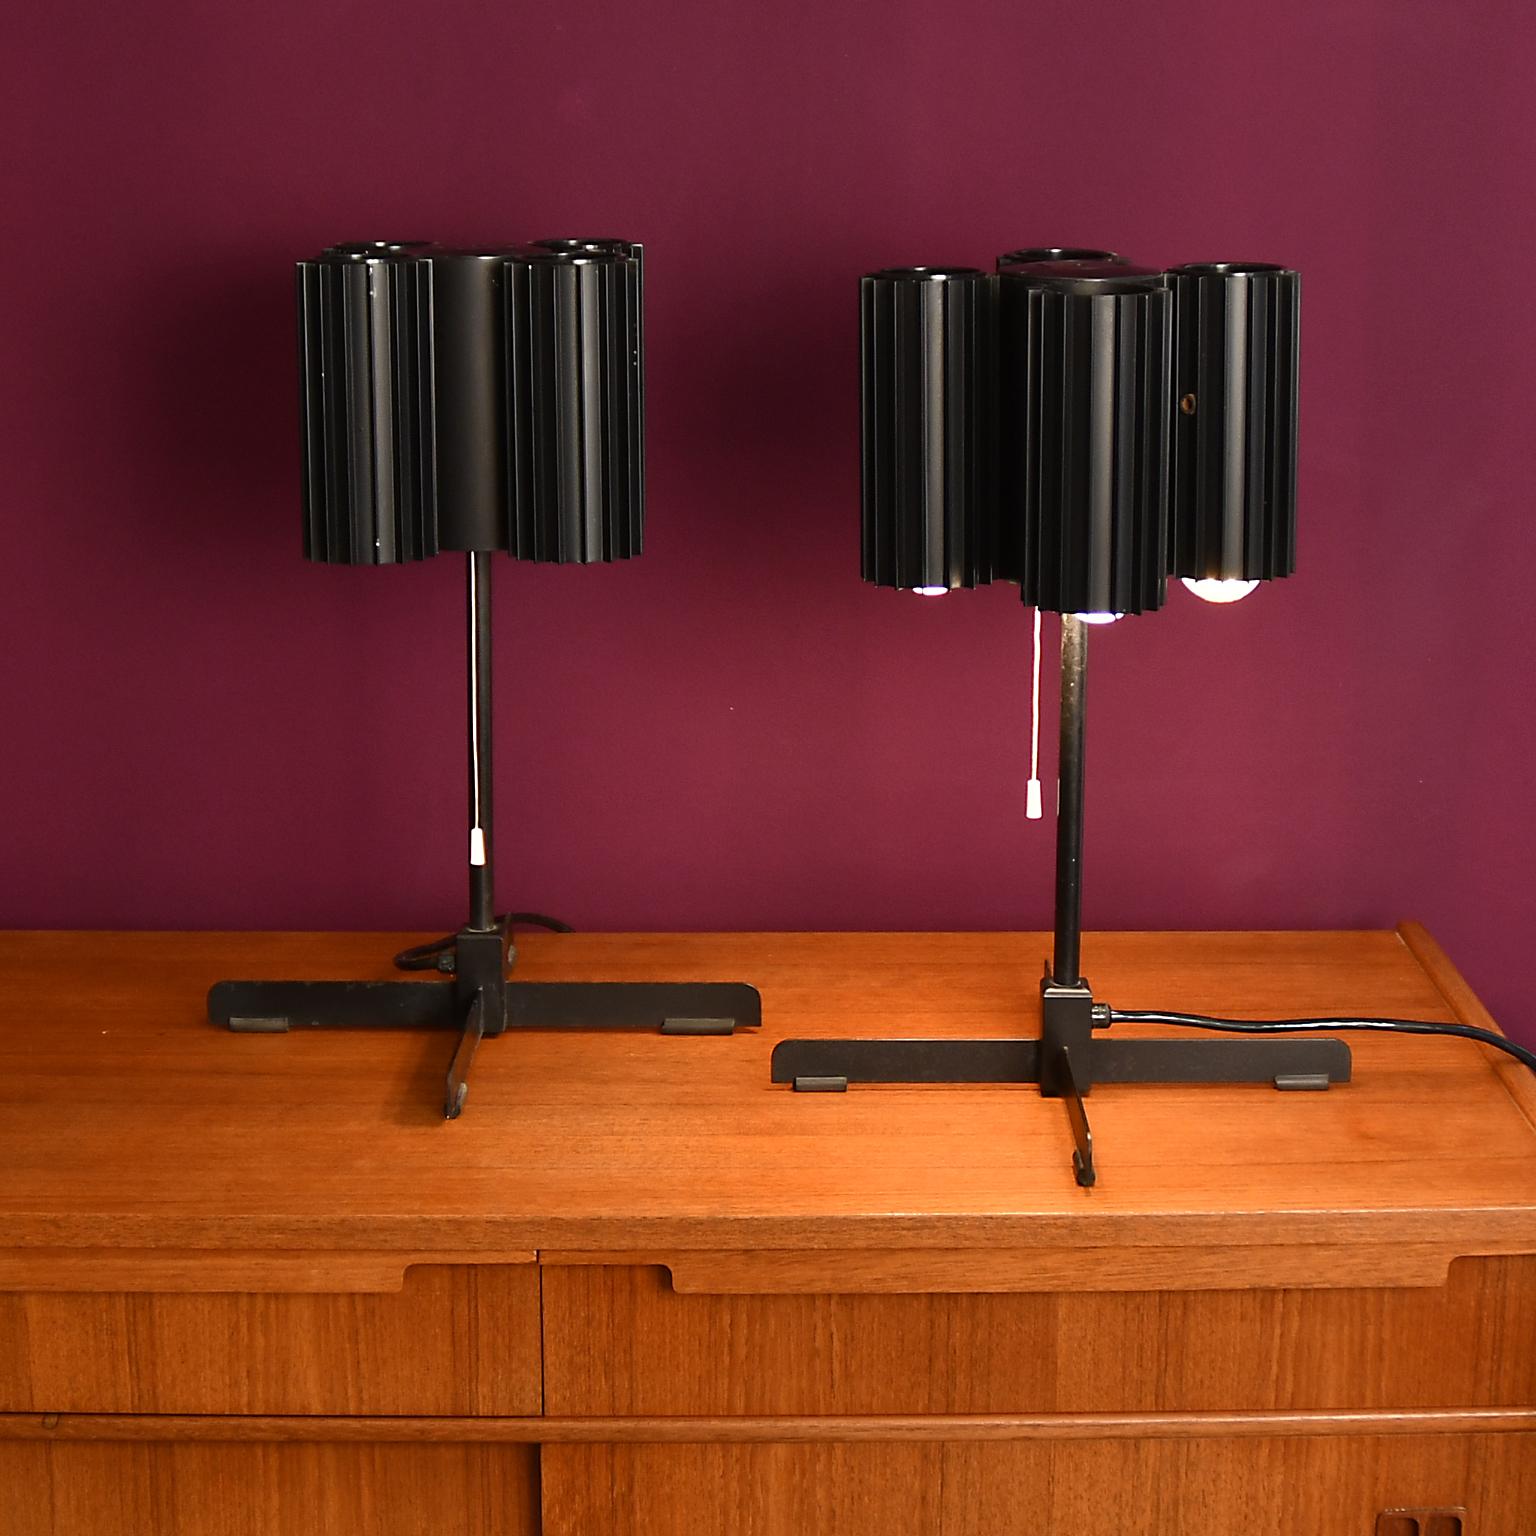 Lampe de table en métal, peinte en noir, état original.
La paire est attribuée à J. T. Kalmar vers 1970. 4 tubes métalliques cannelés, intérieur partiellement manquant de la laque noire. Chacun 4 douilles E27 avec bord en porcelaine. Nous